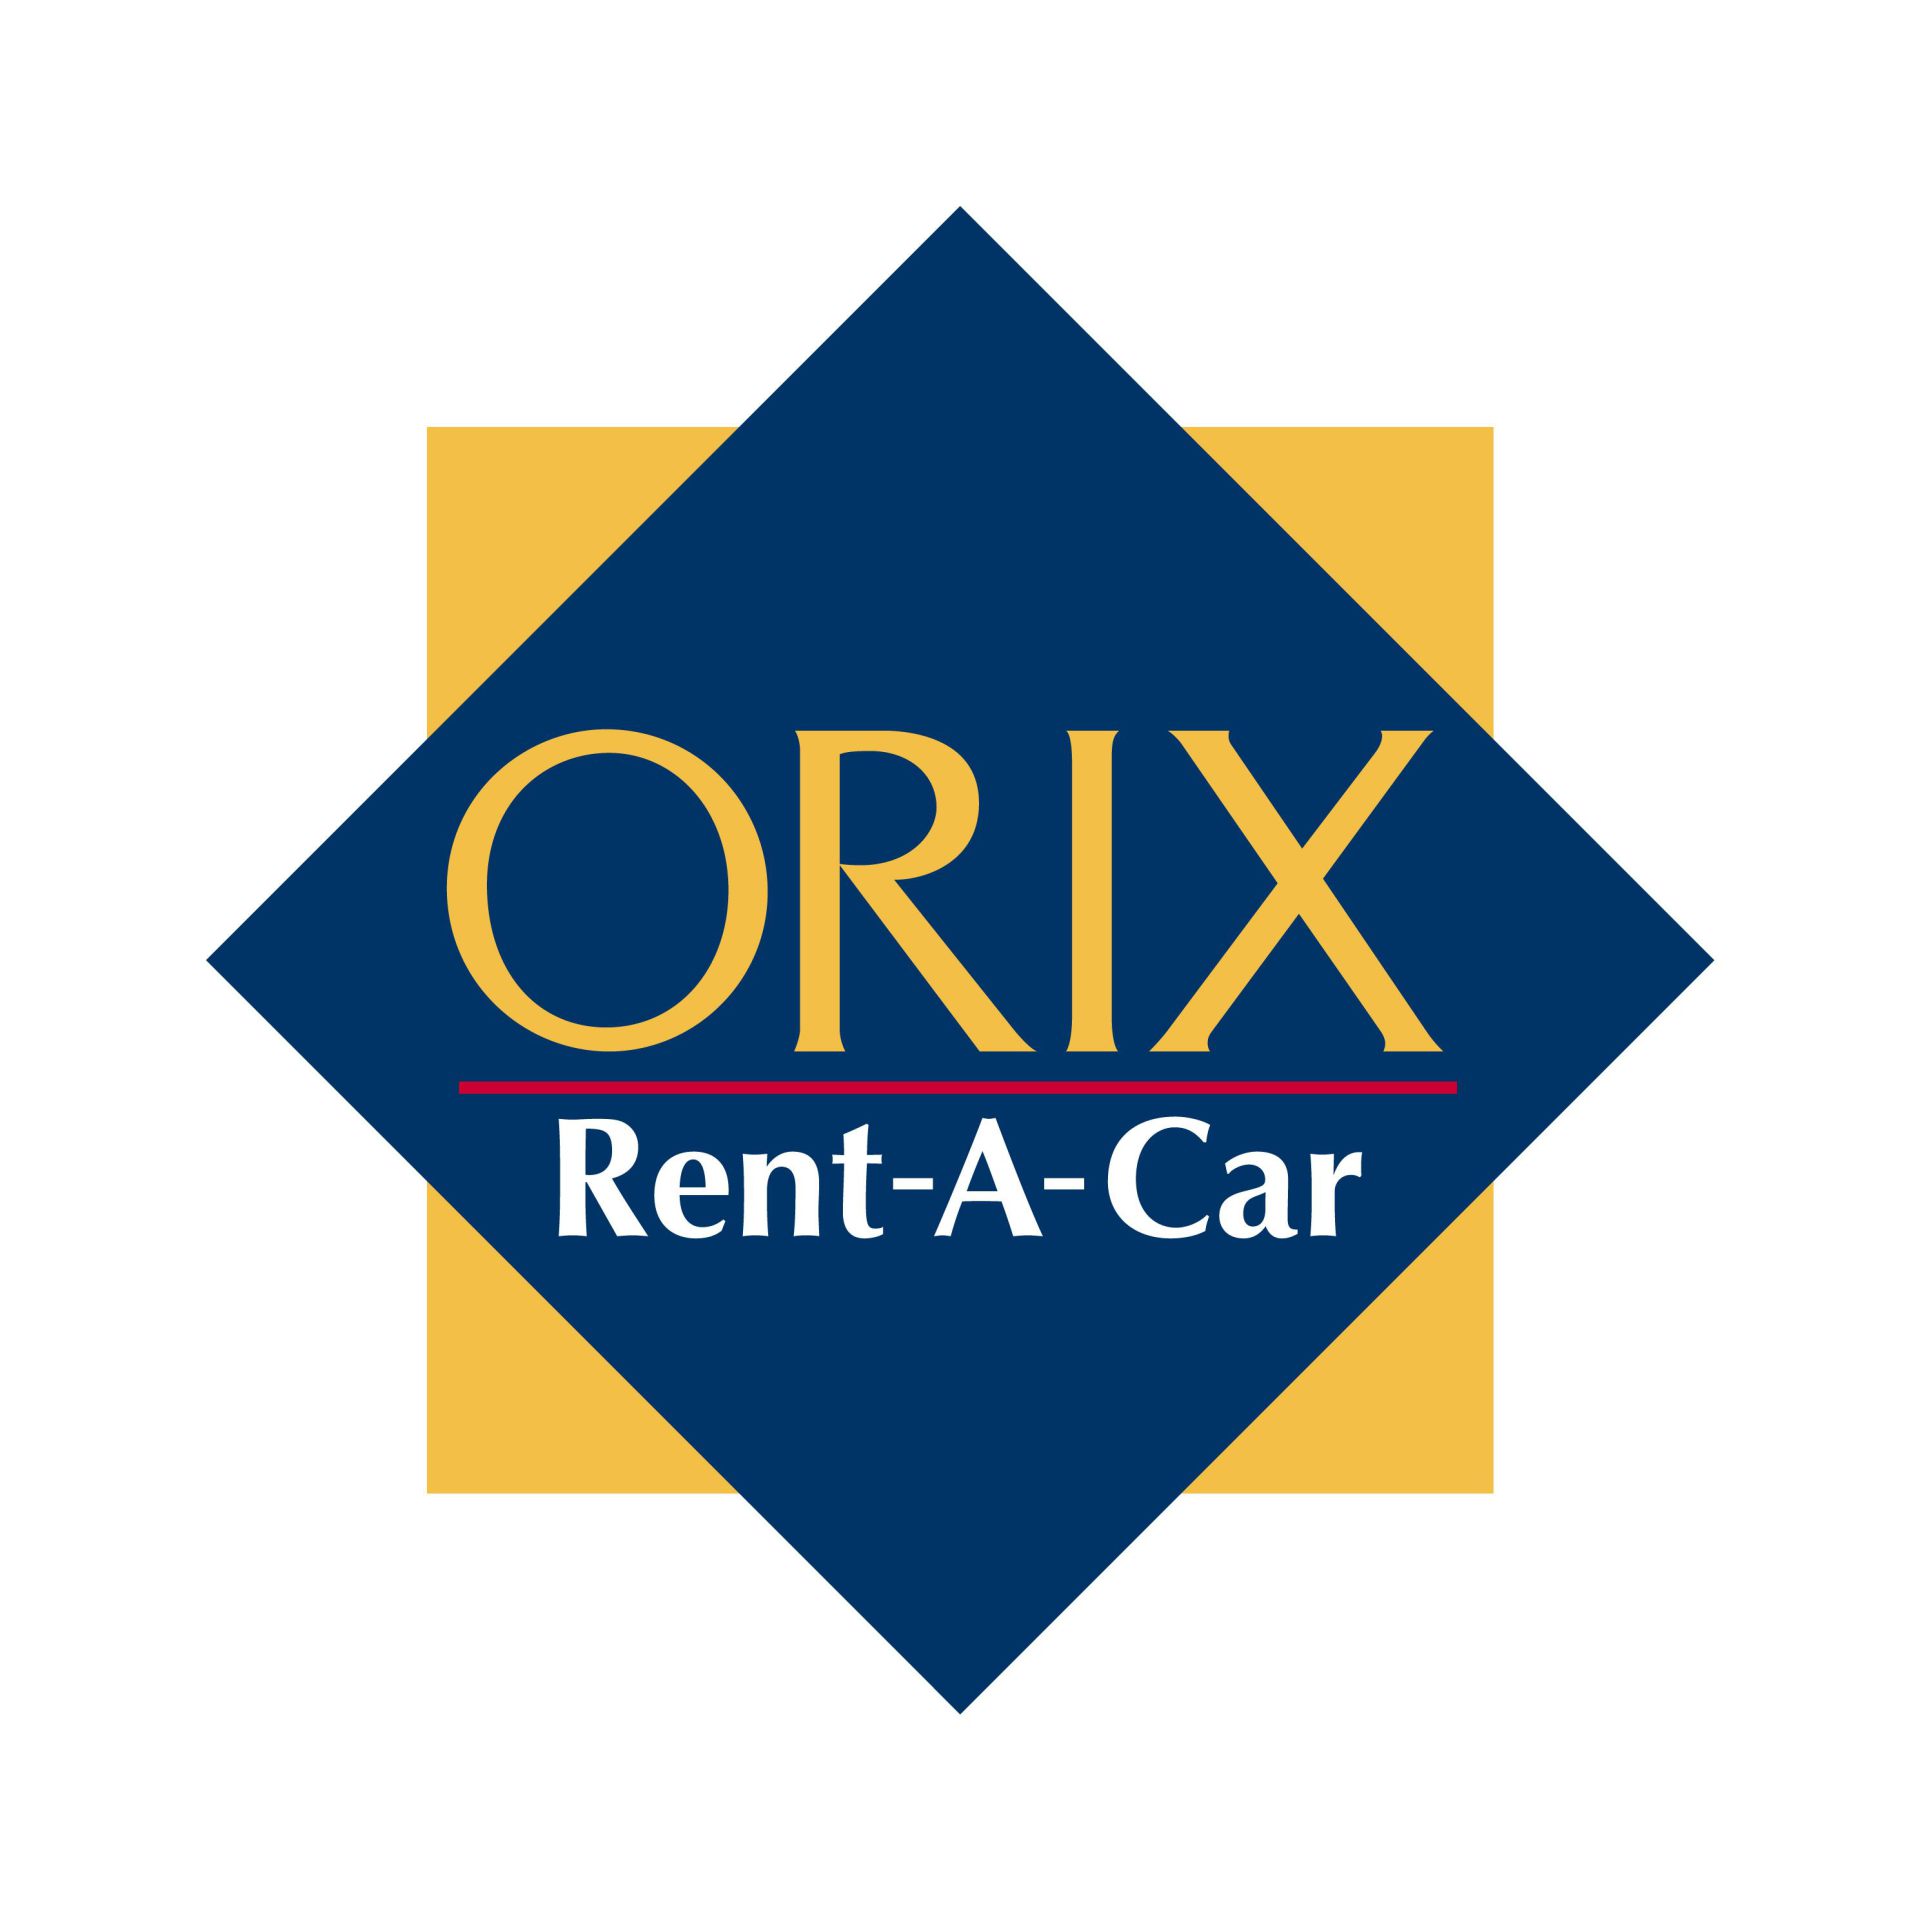 ORIX Rent-A-Car Tottori